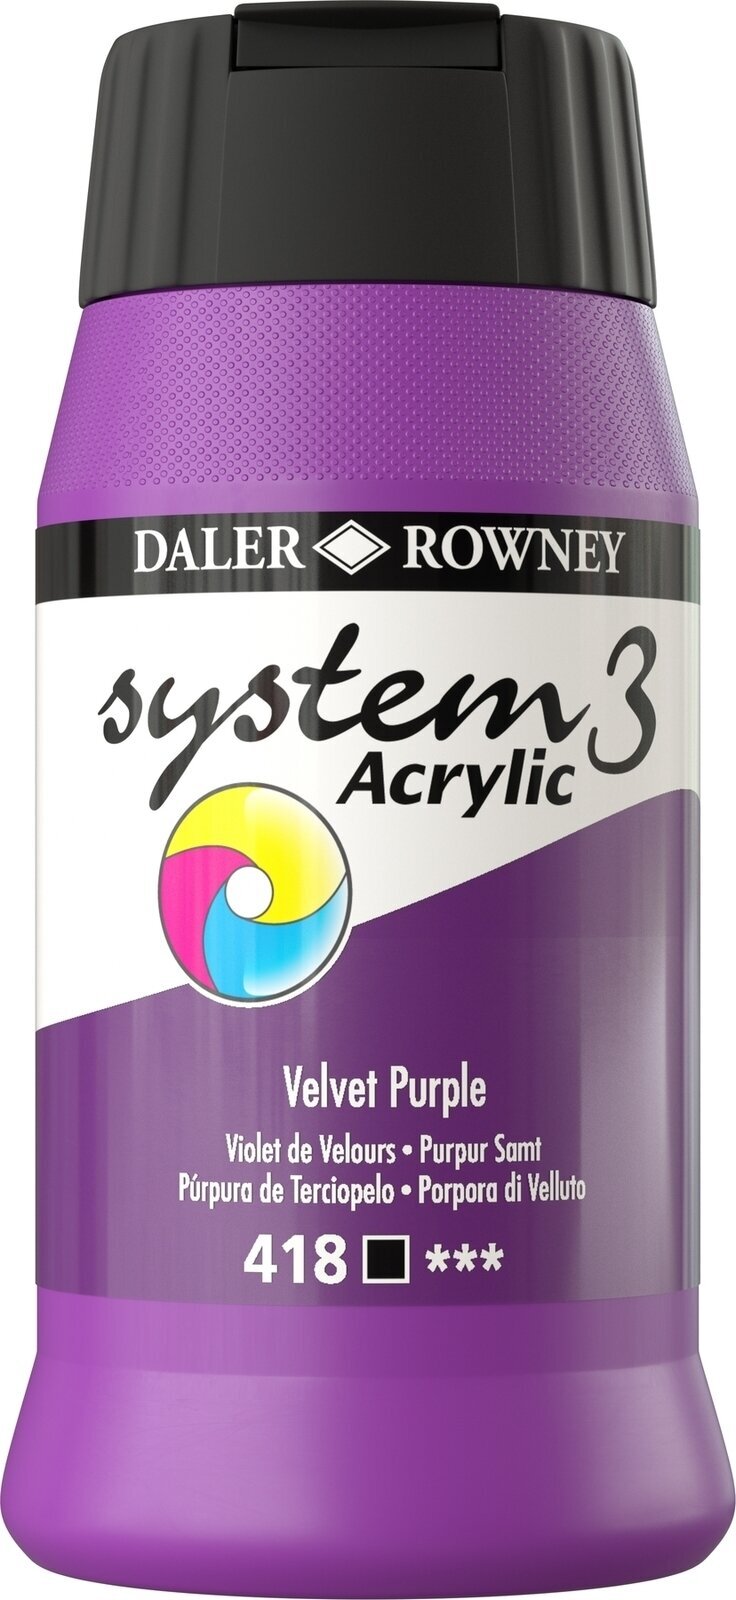 Peinture acrylique Daler Rowney System3 Peinture acrylique Velvet Purple 500 ml 1 pc